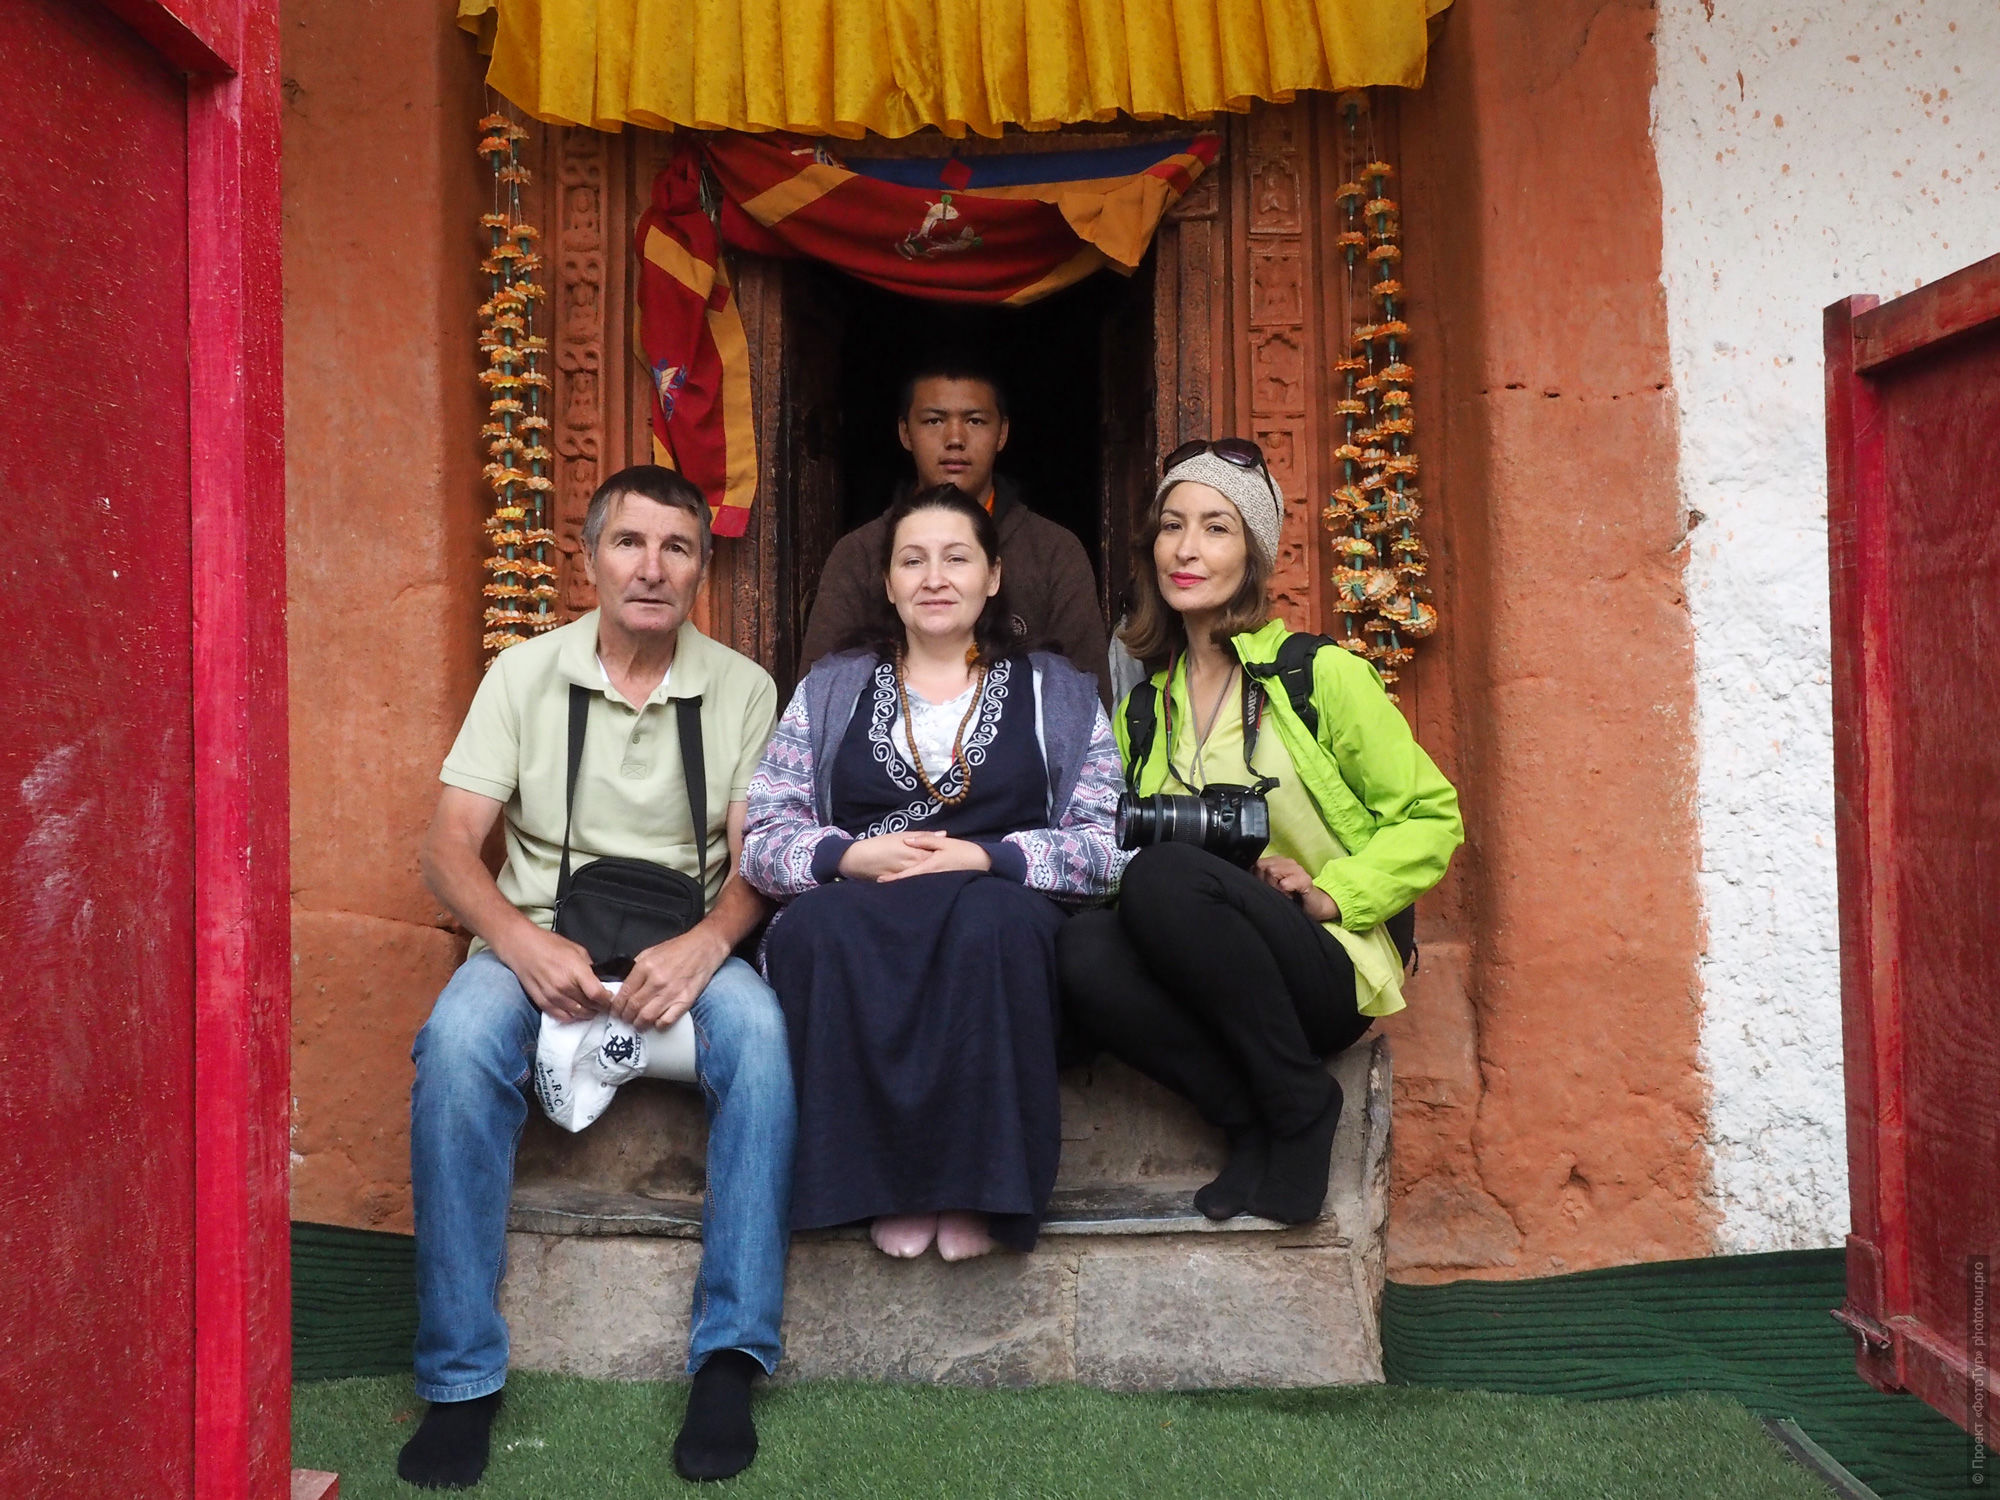 В монастыре Ванла. Рекламный тур по Ладакху для буддистов, 21.07.2018 — 30.07.2018 года.